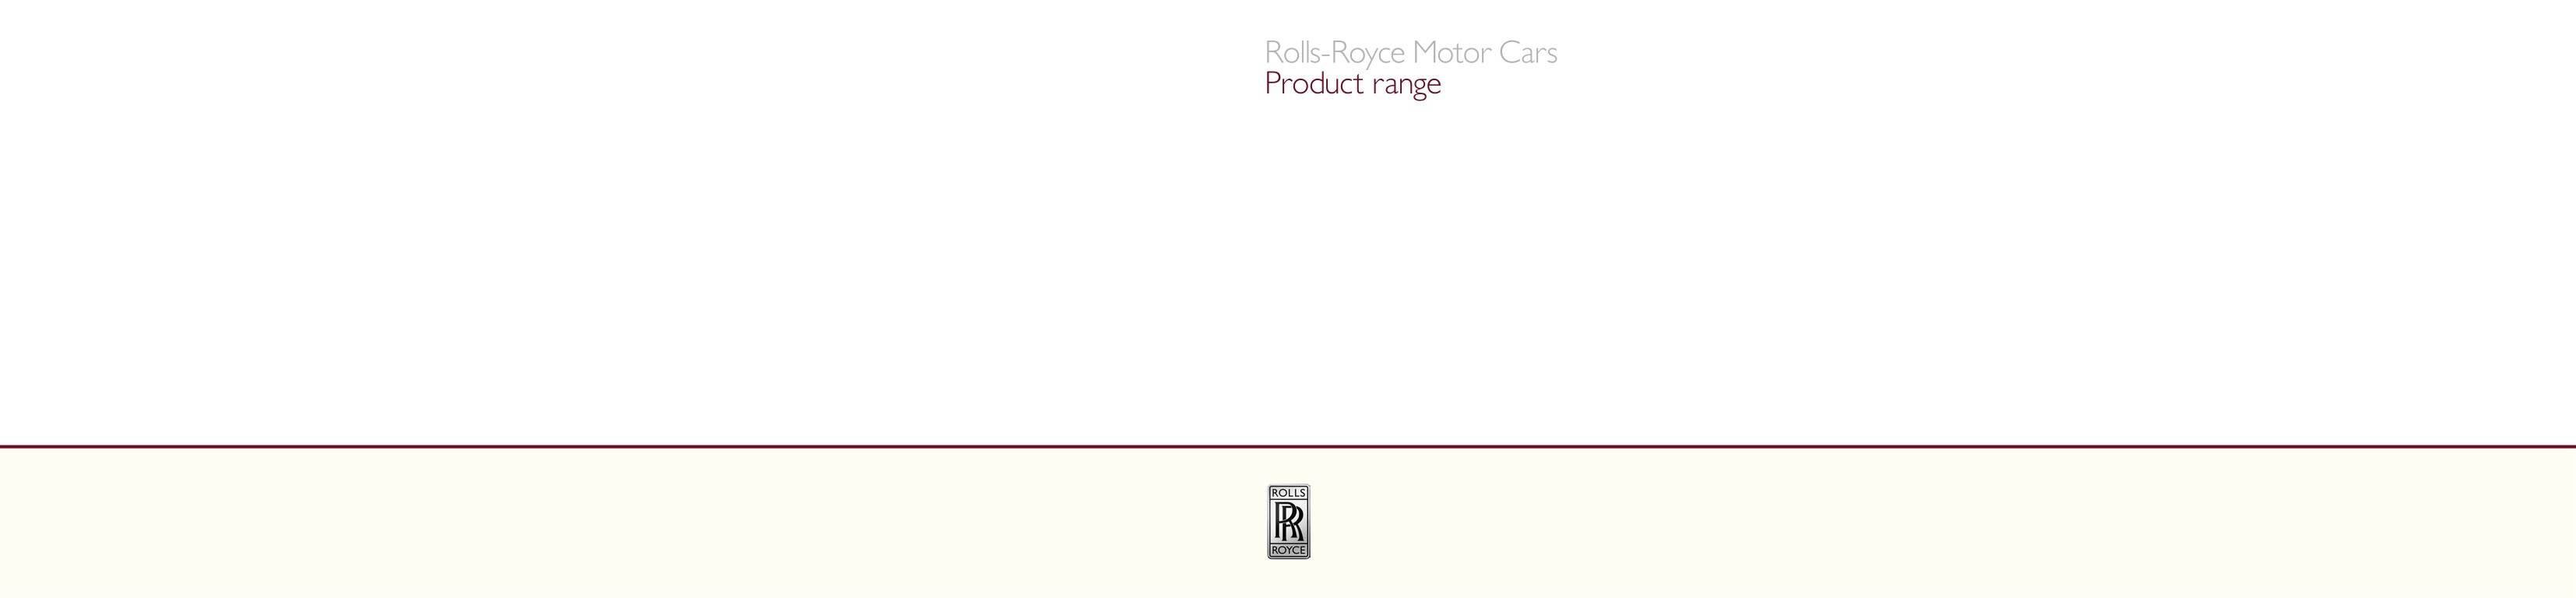 2012 Rolls-Royce Model Range Brochure Page 4